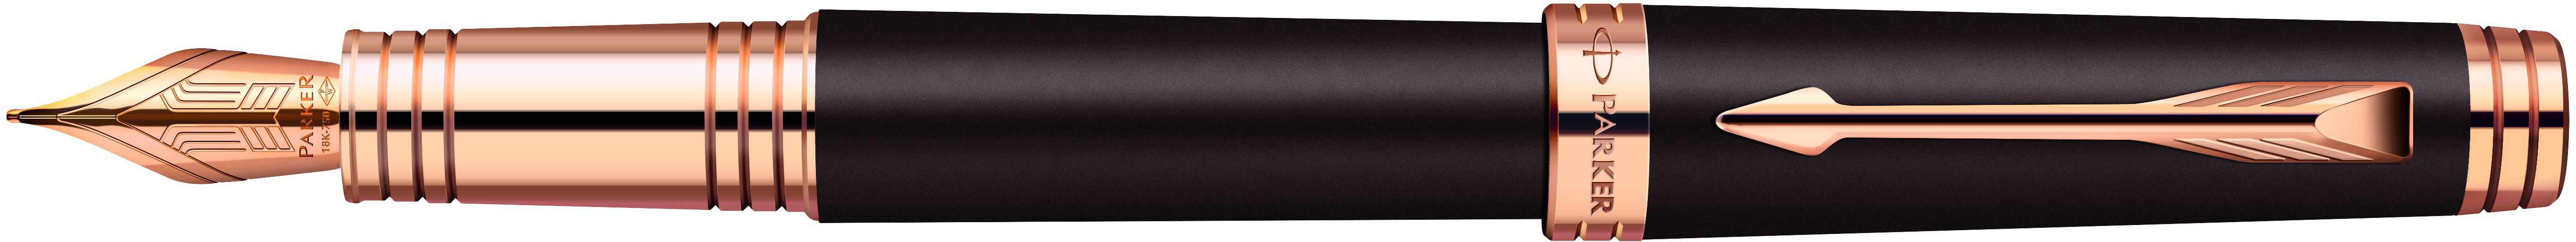 PARKER Stylo plume M S1876395 PREMIER noir